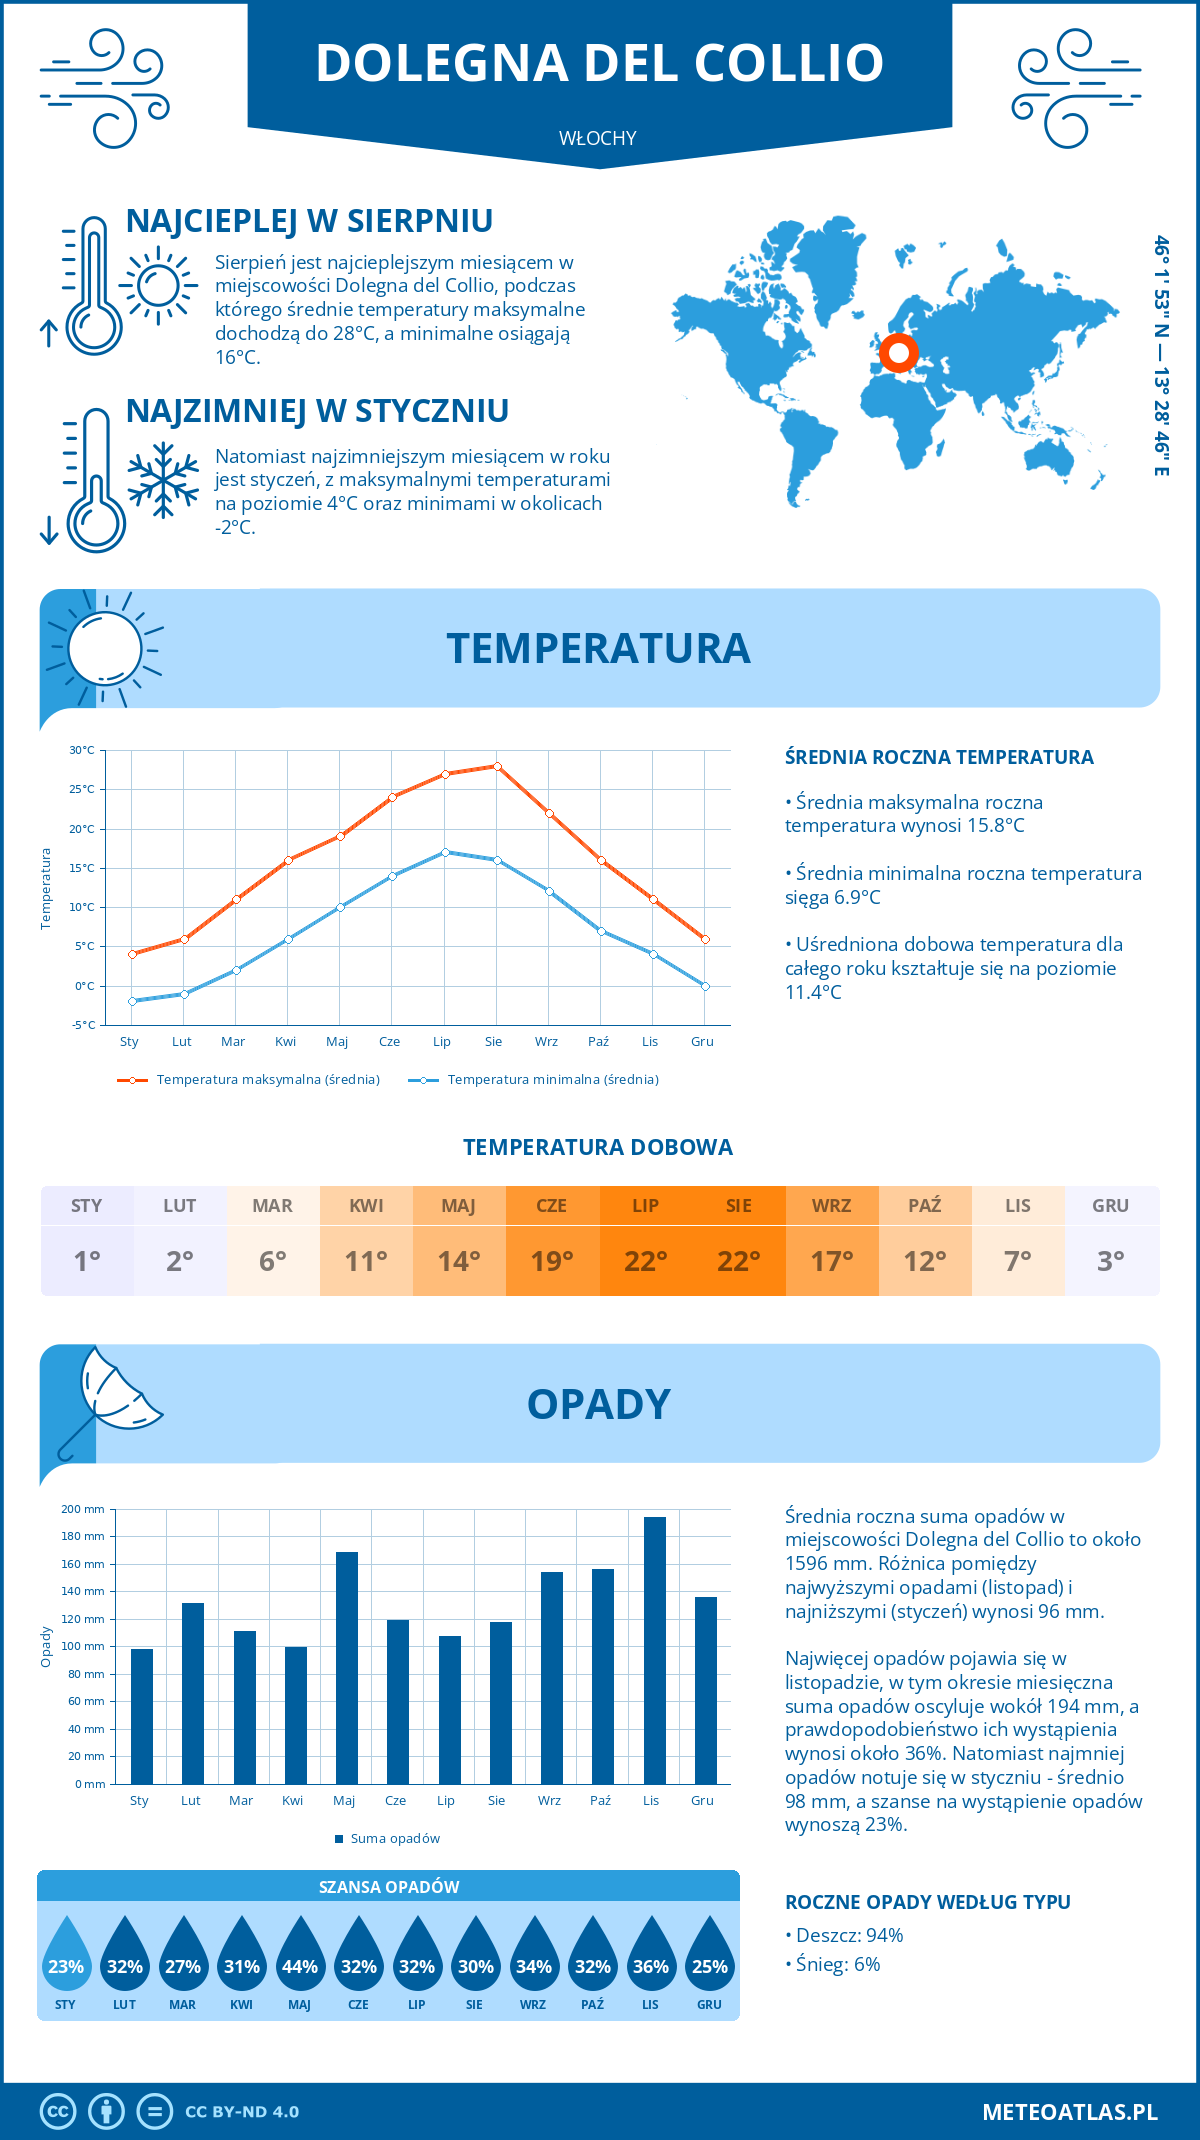 Pogoda Dolegna del Collio (Włochy). Temperatura oraz opady.